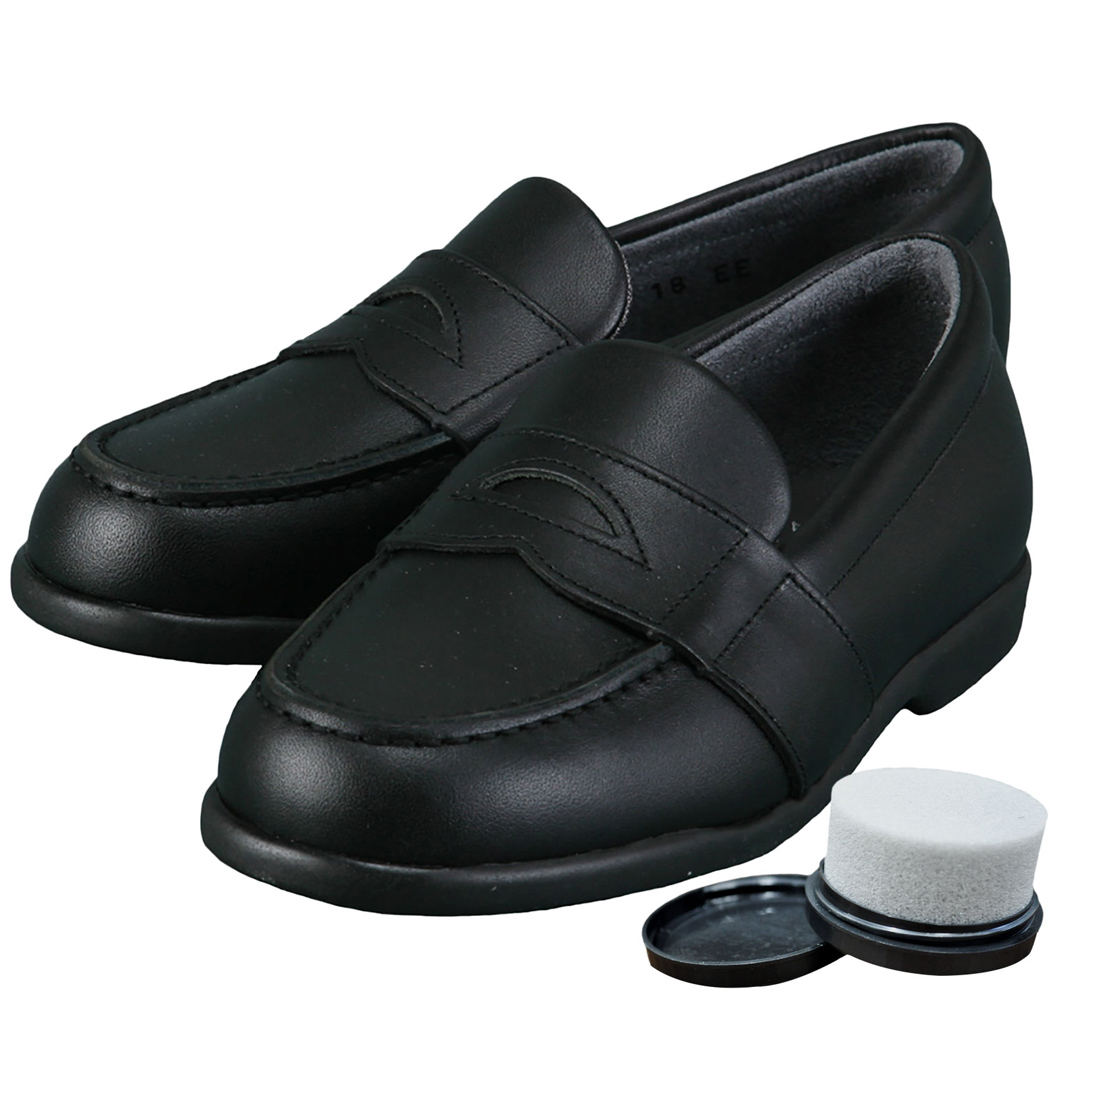 靴磨き付き KID CORE キッドコア 2E 日本製本革ソフトタイプ ローファー 靴ズレしにくい靴 2E ブラック 22.0cm〜25.0cm kc1081